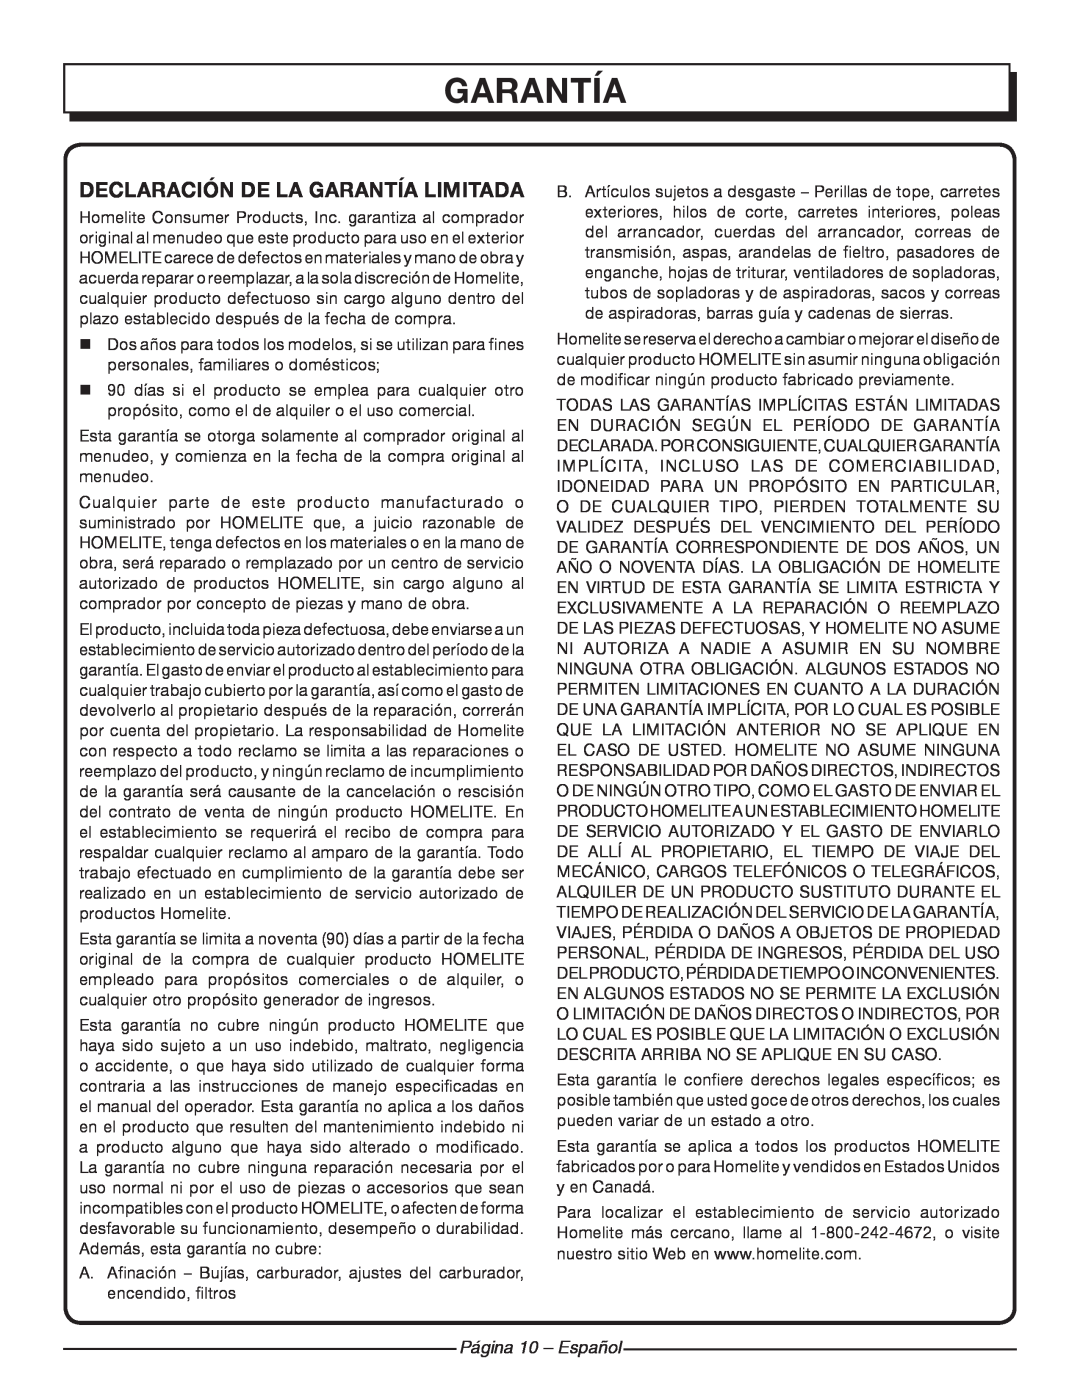 Homelite UT42100 manuel dutilisation garantía, Declaración De La Garantía Limitada, Página 10 - Español 